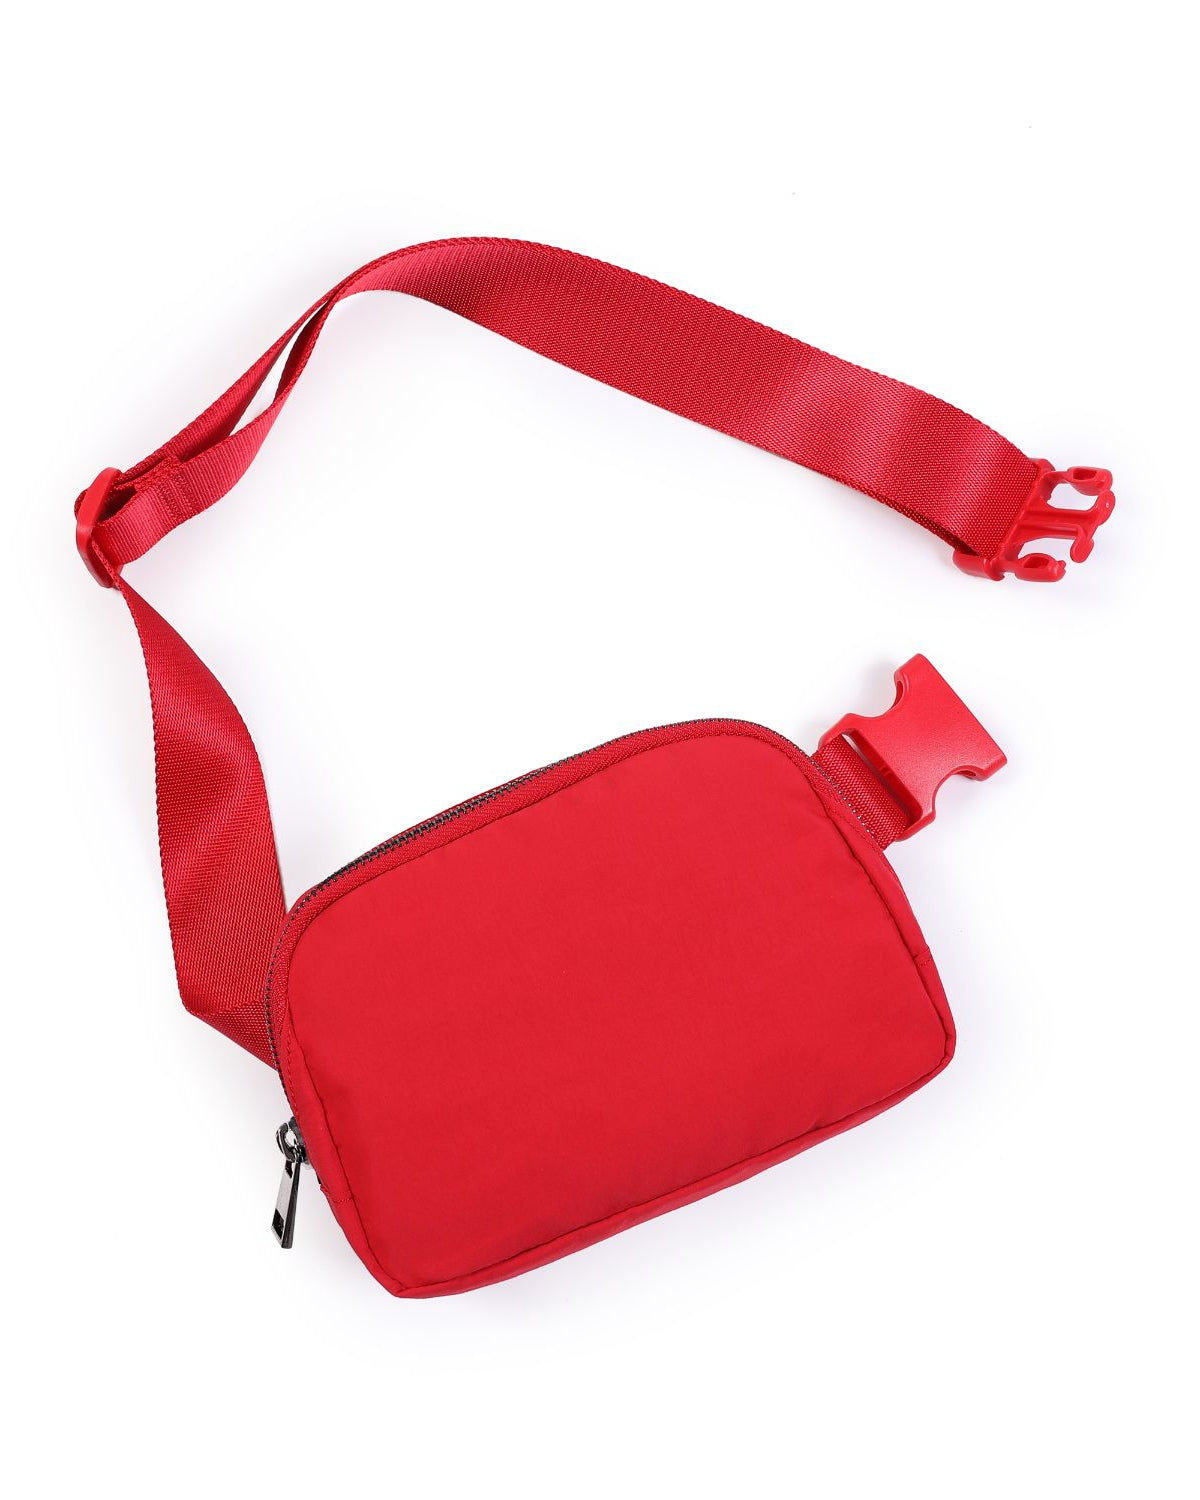 Unisex Mini Belt Bag Red 8" x 2" x 5.5" - ododos